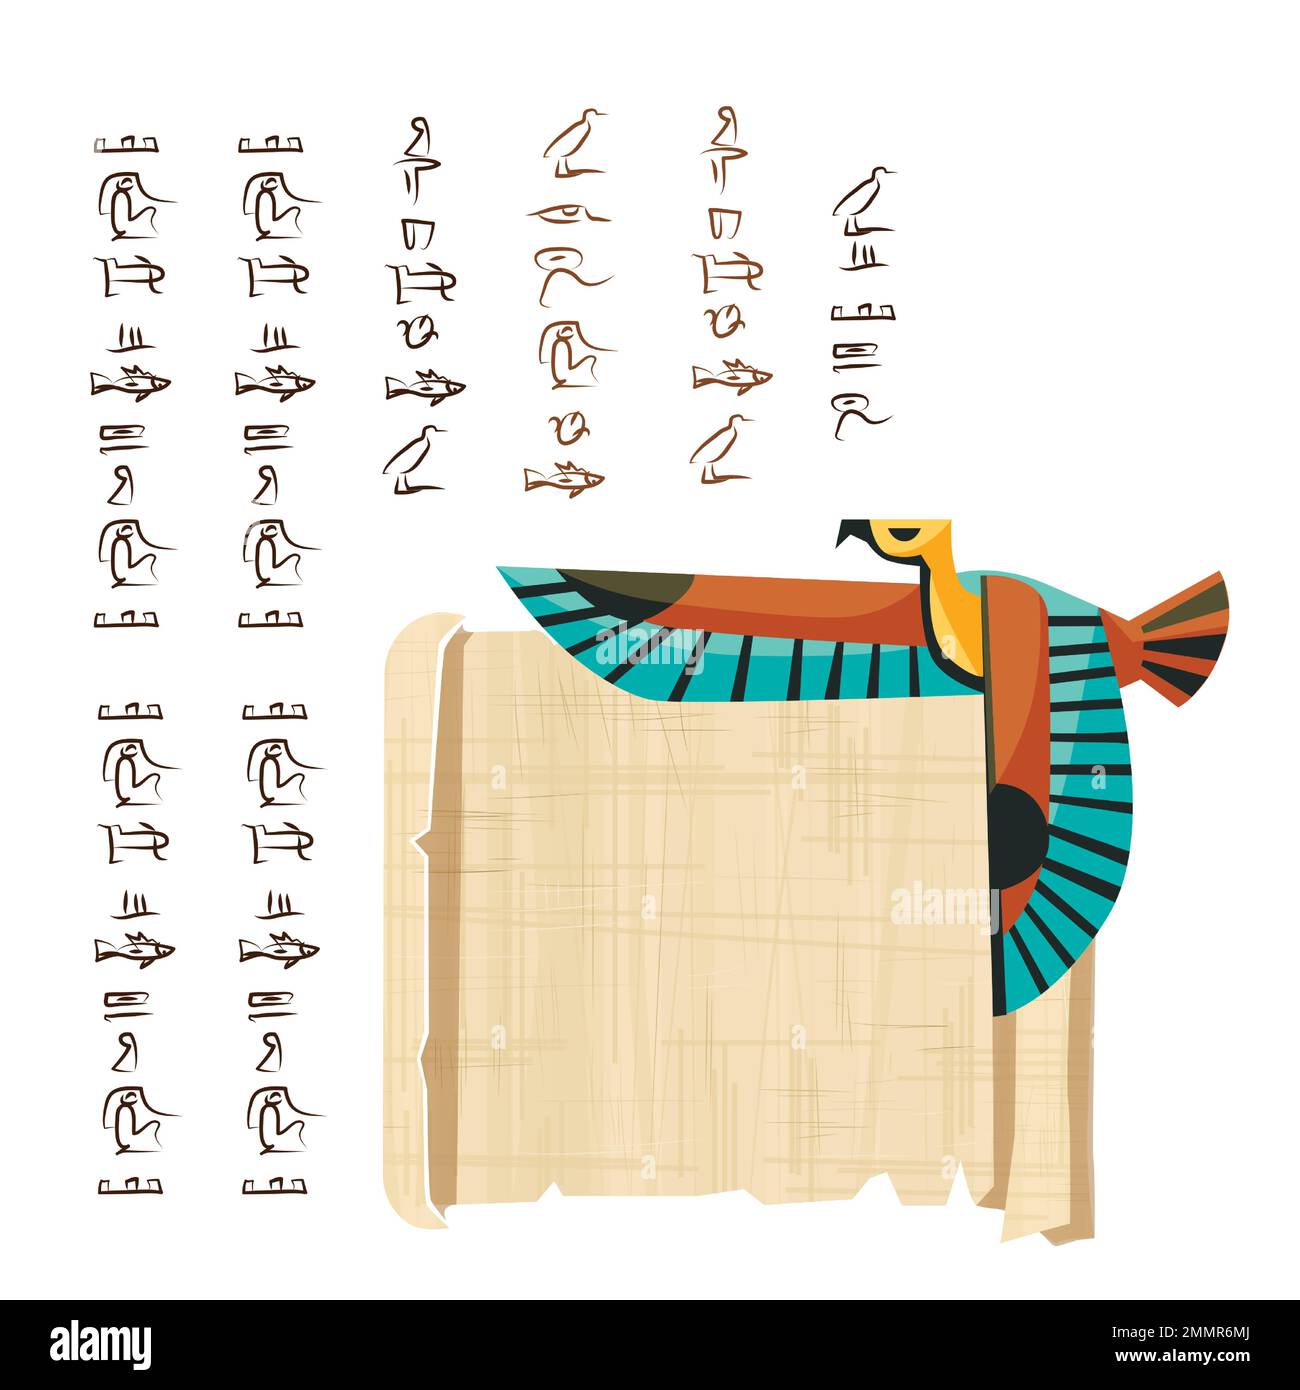 Alte ägyptische Papyrus-Schriftrolle mit fliegender Vogelfigur Cartoon-Vektordarstellung. Ägyptisches Kultursymbol, leeres, entfaltetes antikes Papier, fliegender Falke und Hieroglyphen, isoliert auf Weiß Stock Vektor